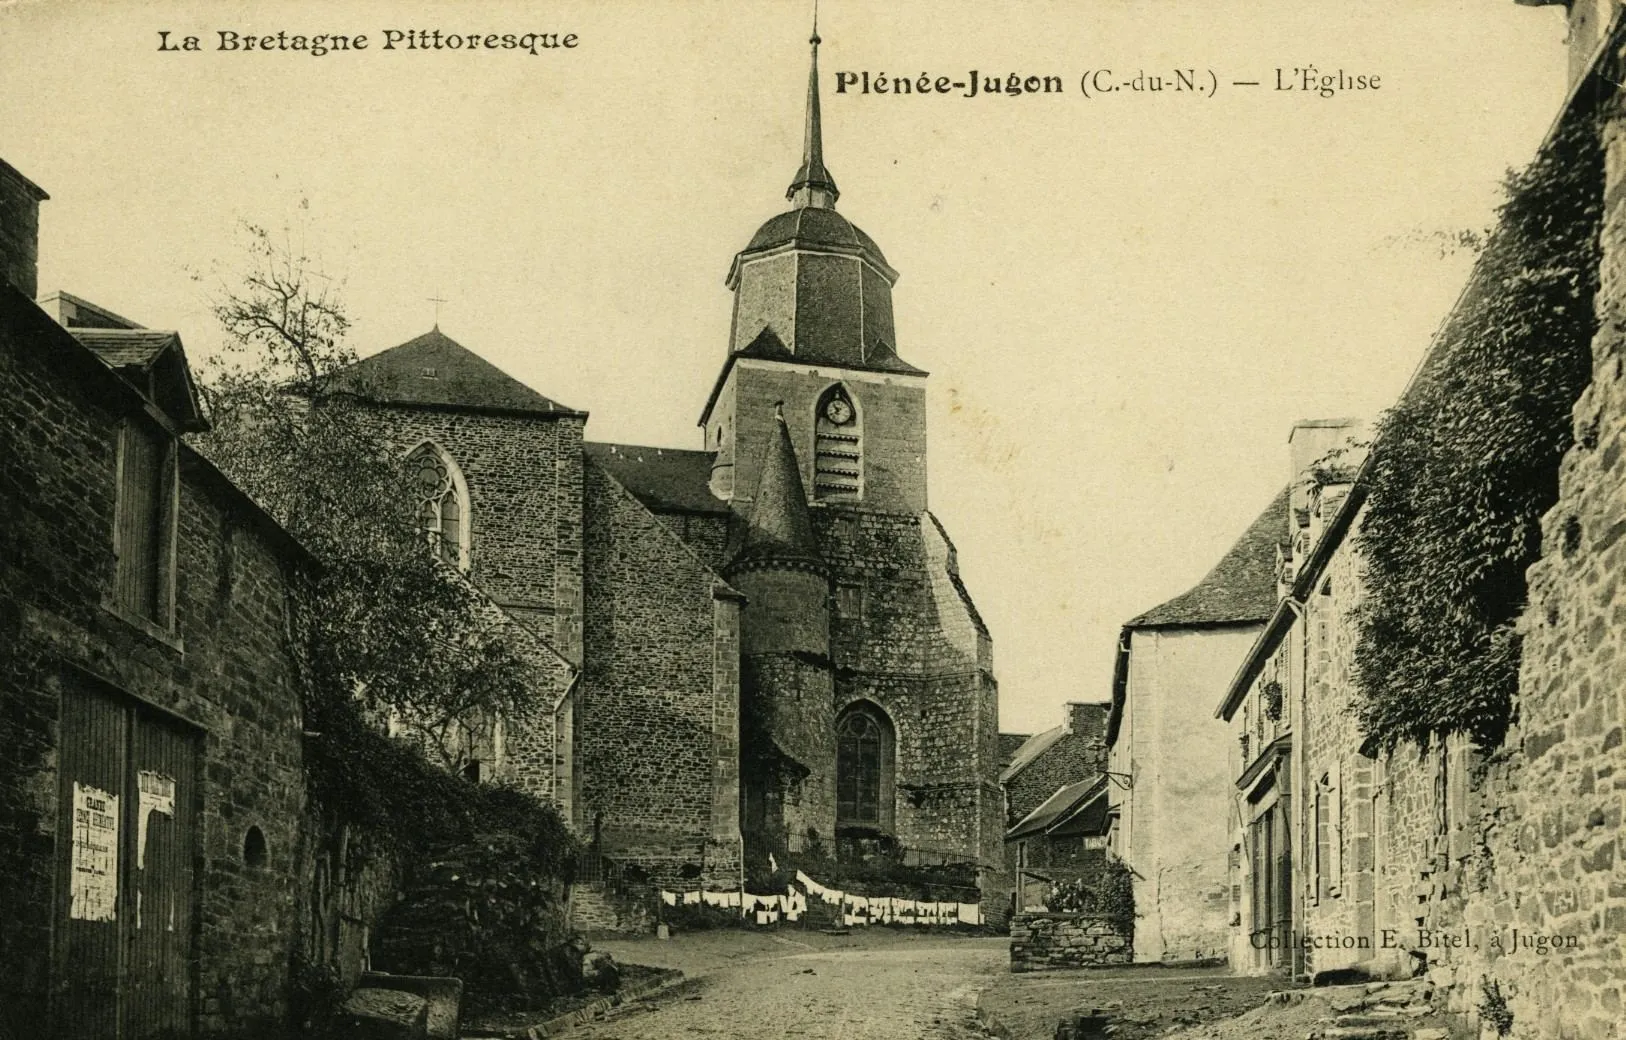 Photo showing: L'Eglise.